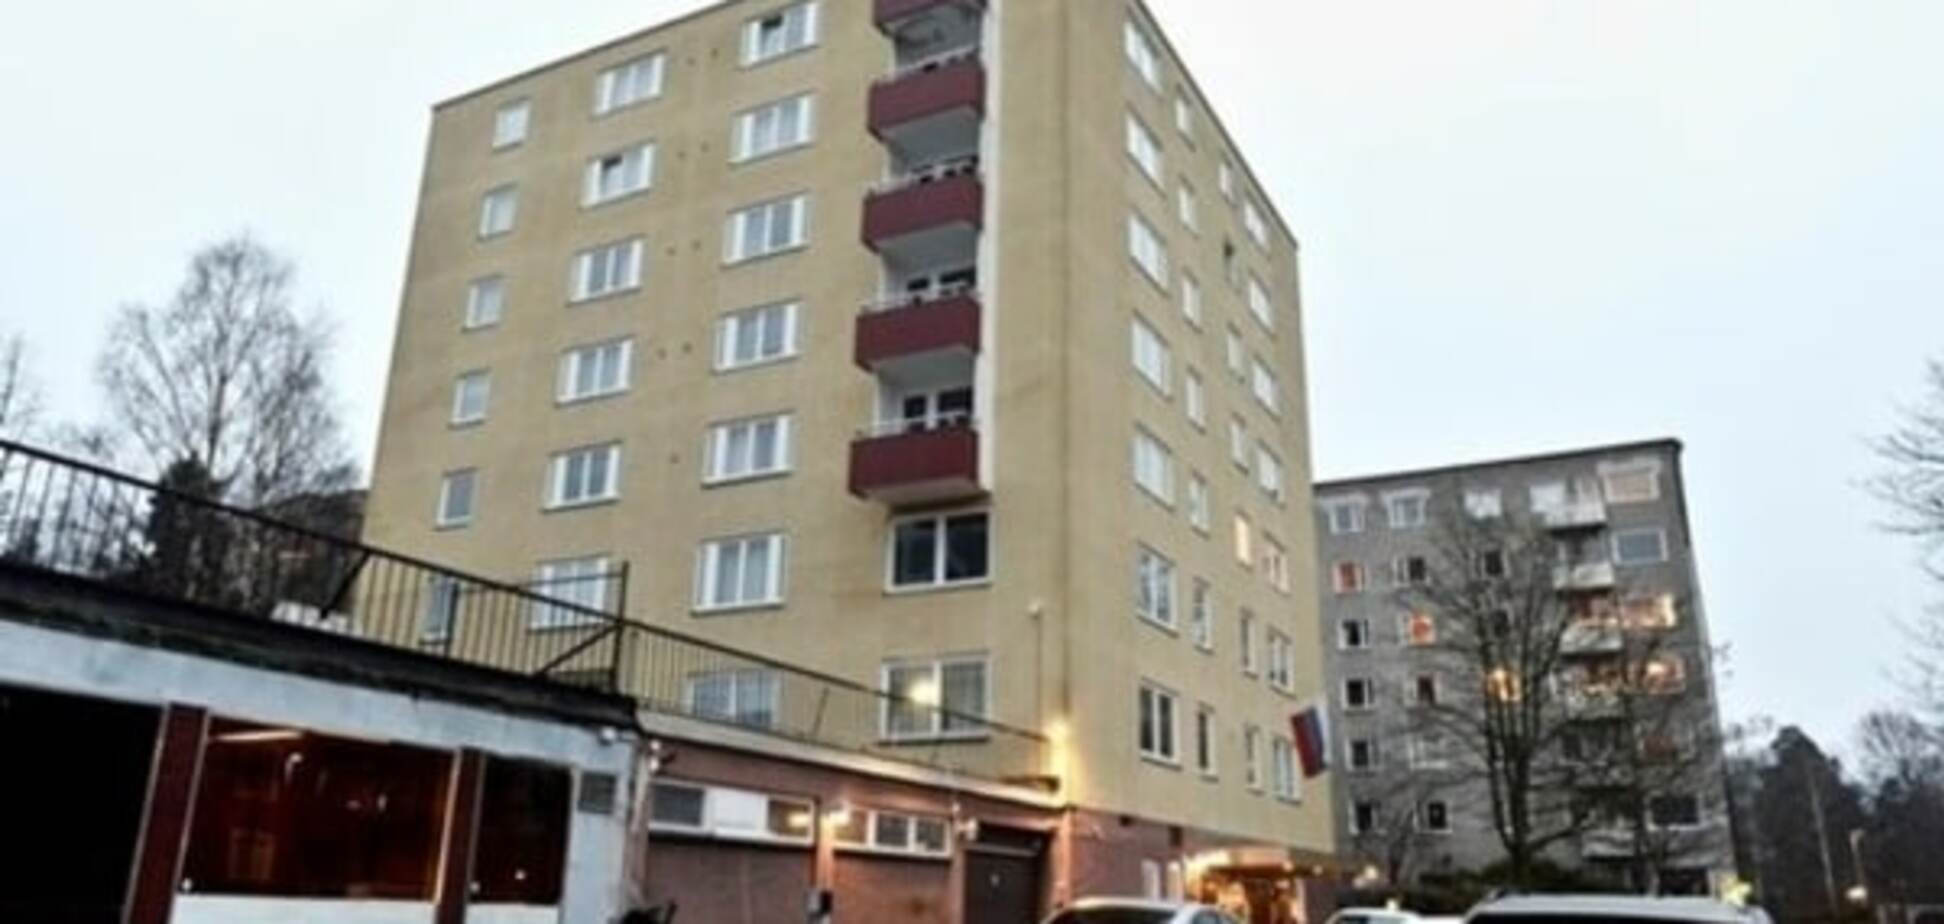 Будинок наш! Російські дипломати влаштували гучний скандал у Швеції